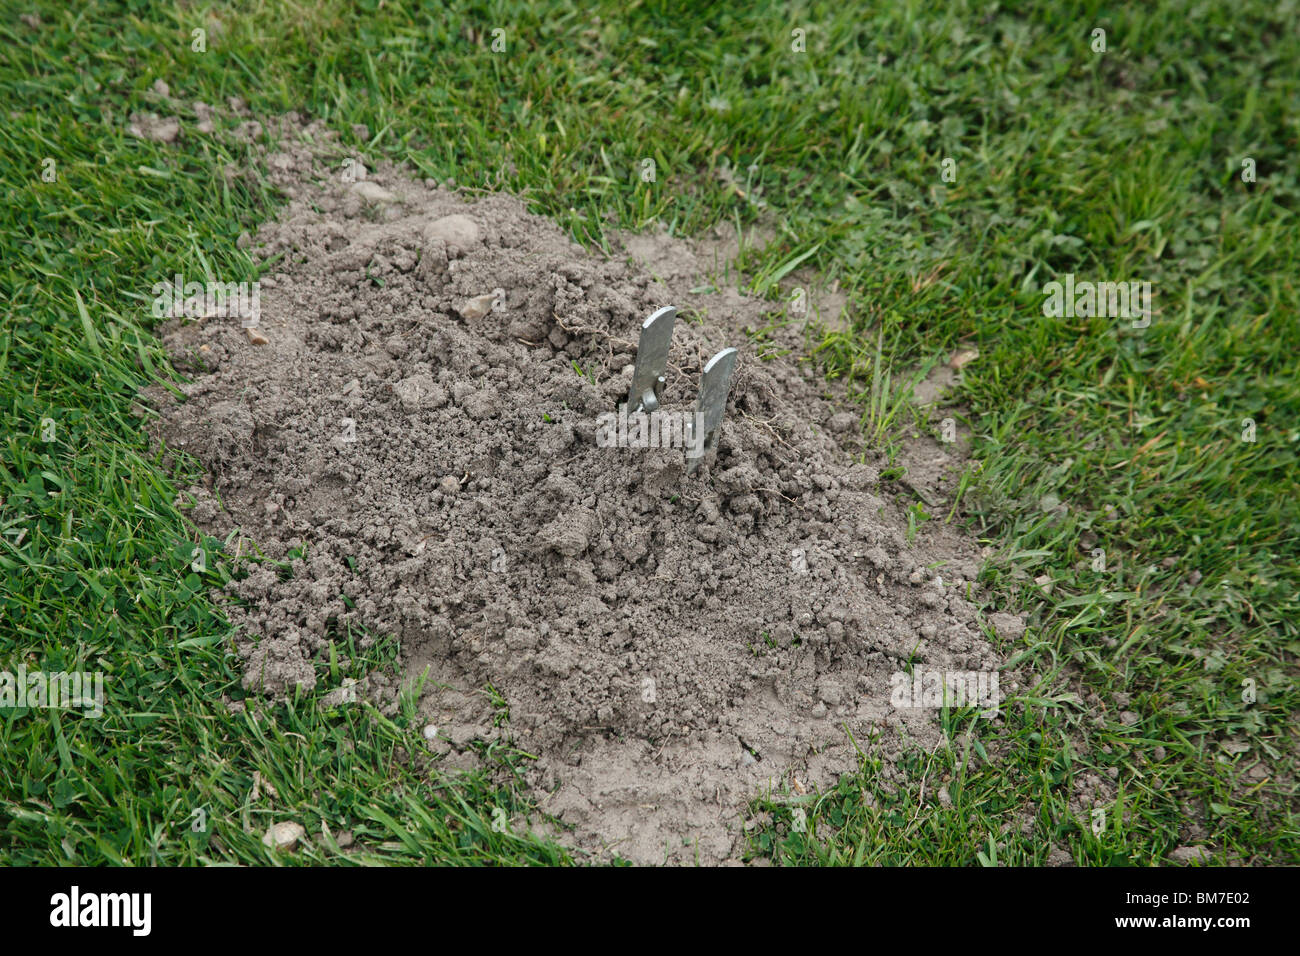 Mole trap placed in mole run under lawn Stock Photo